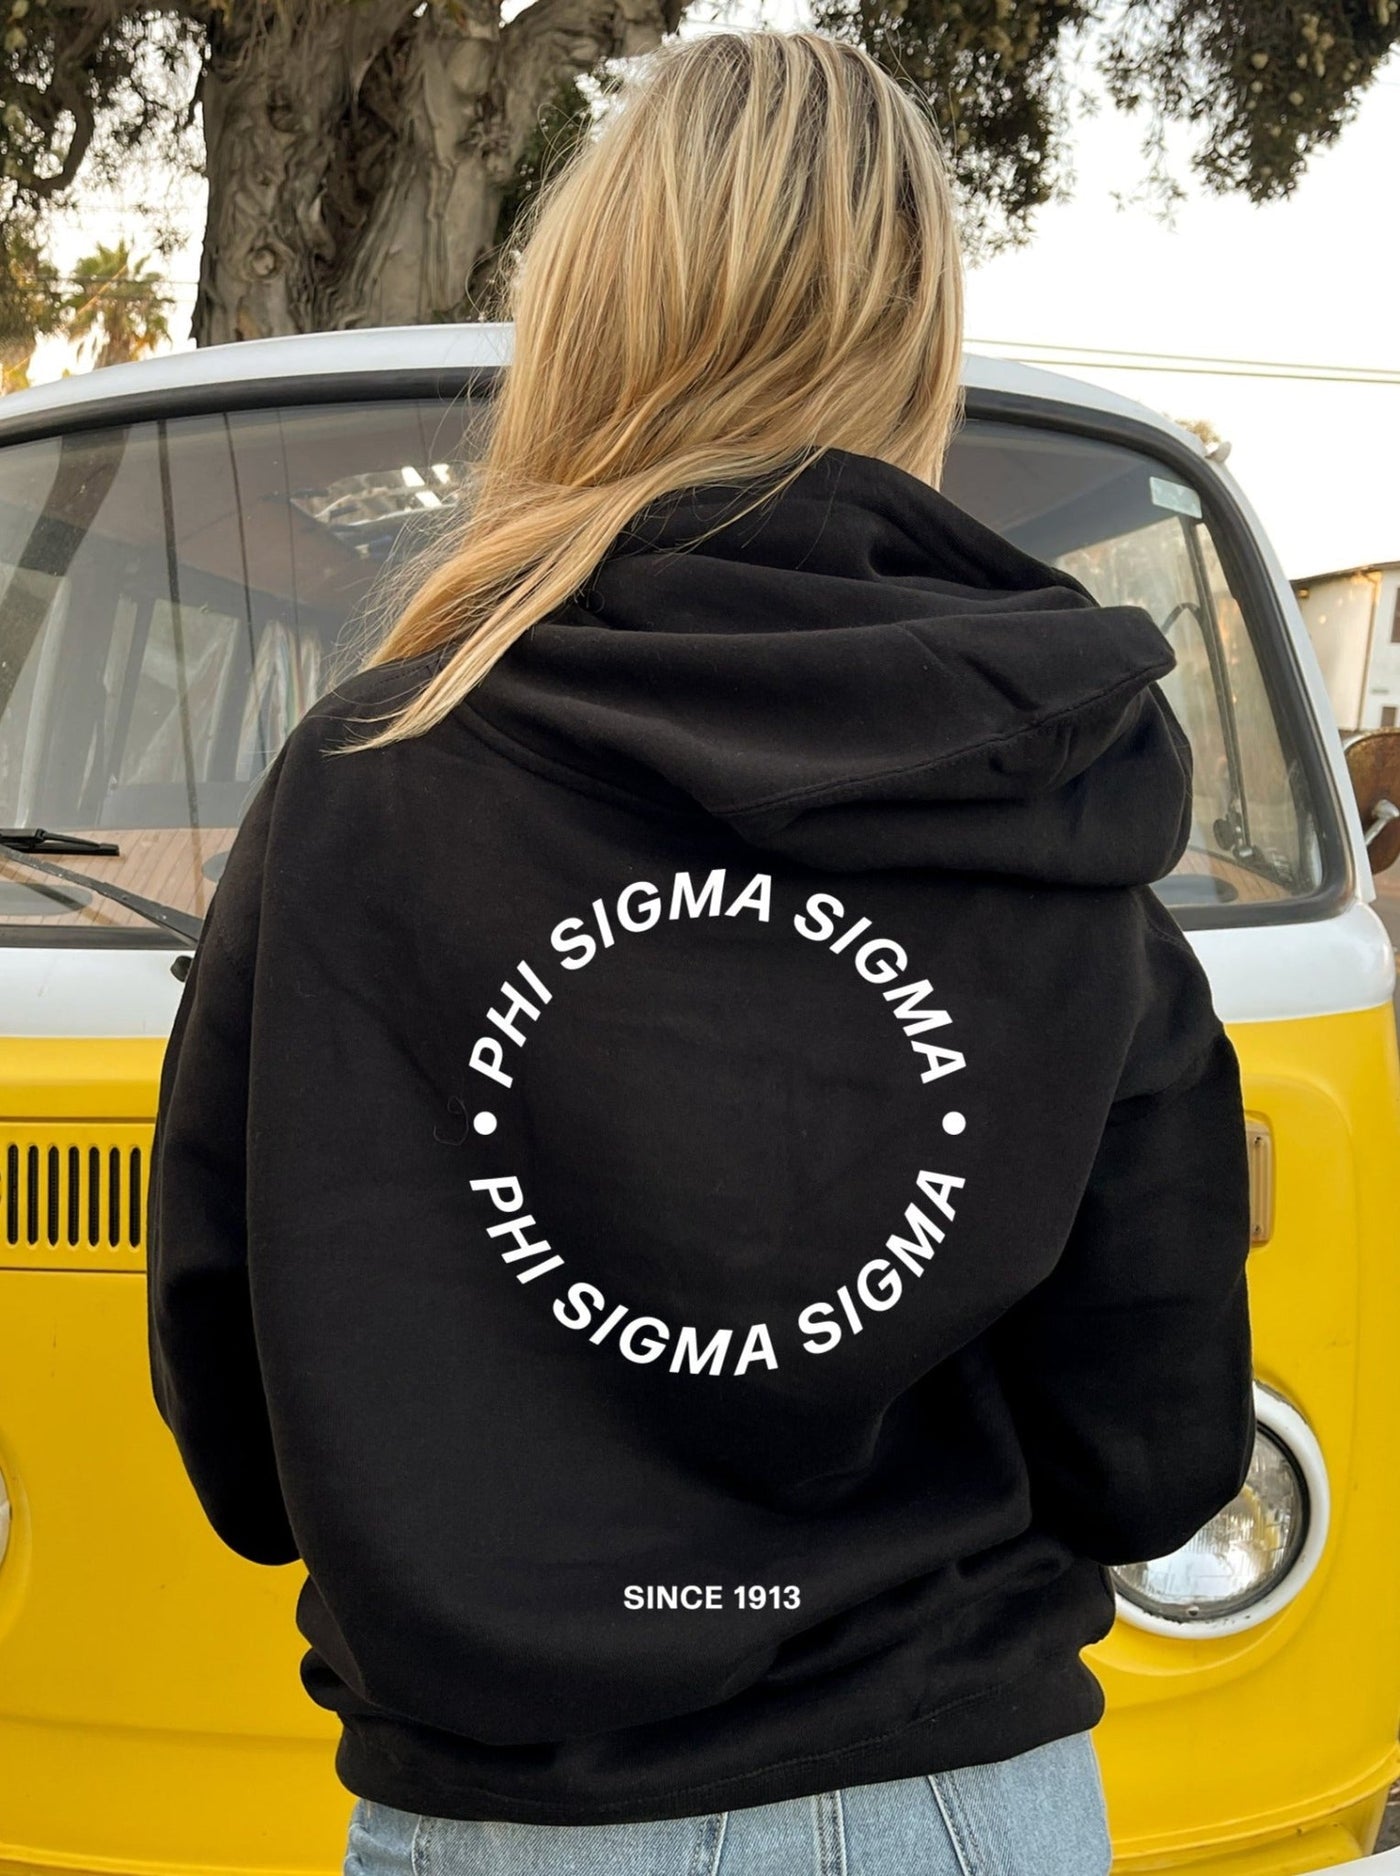 Phi Sigma Sigma Simple Trendy Cute Circle Sorority Hoodie Sweatshirt Design Black